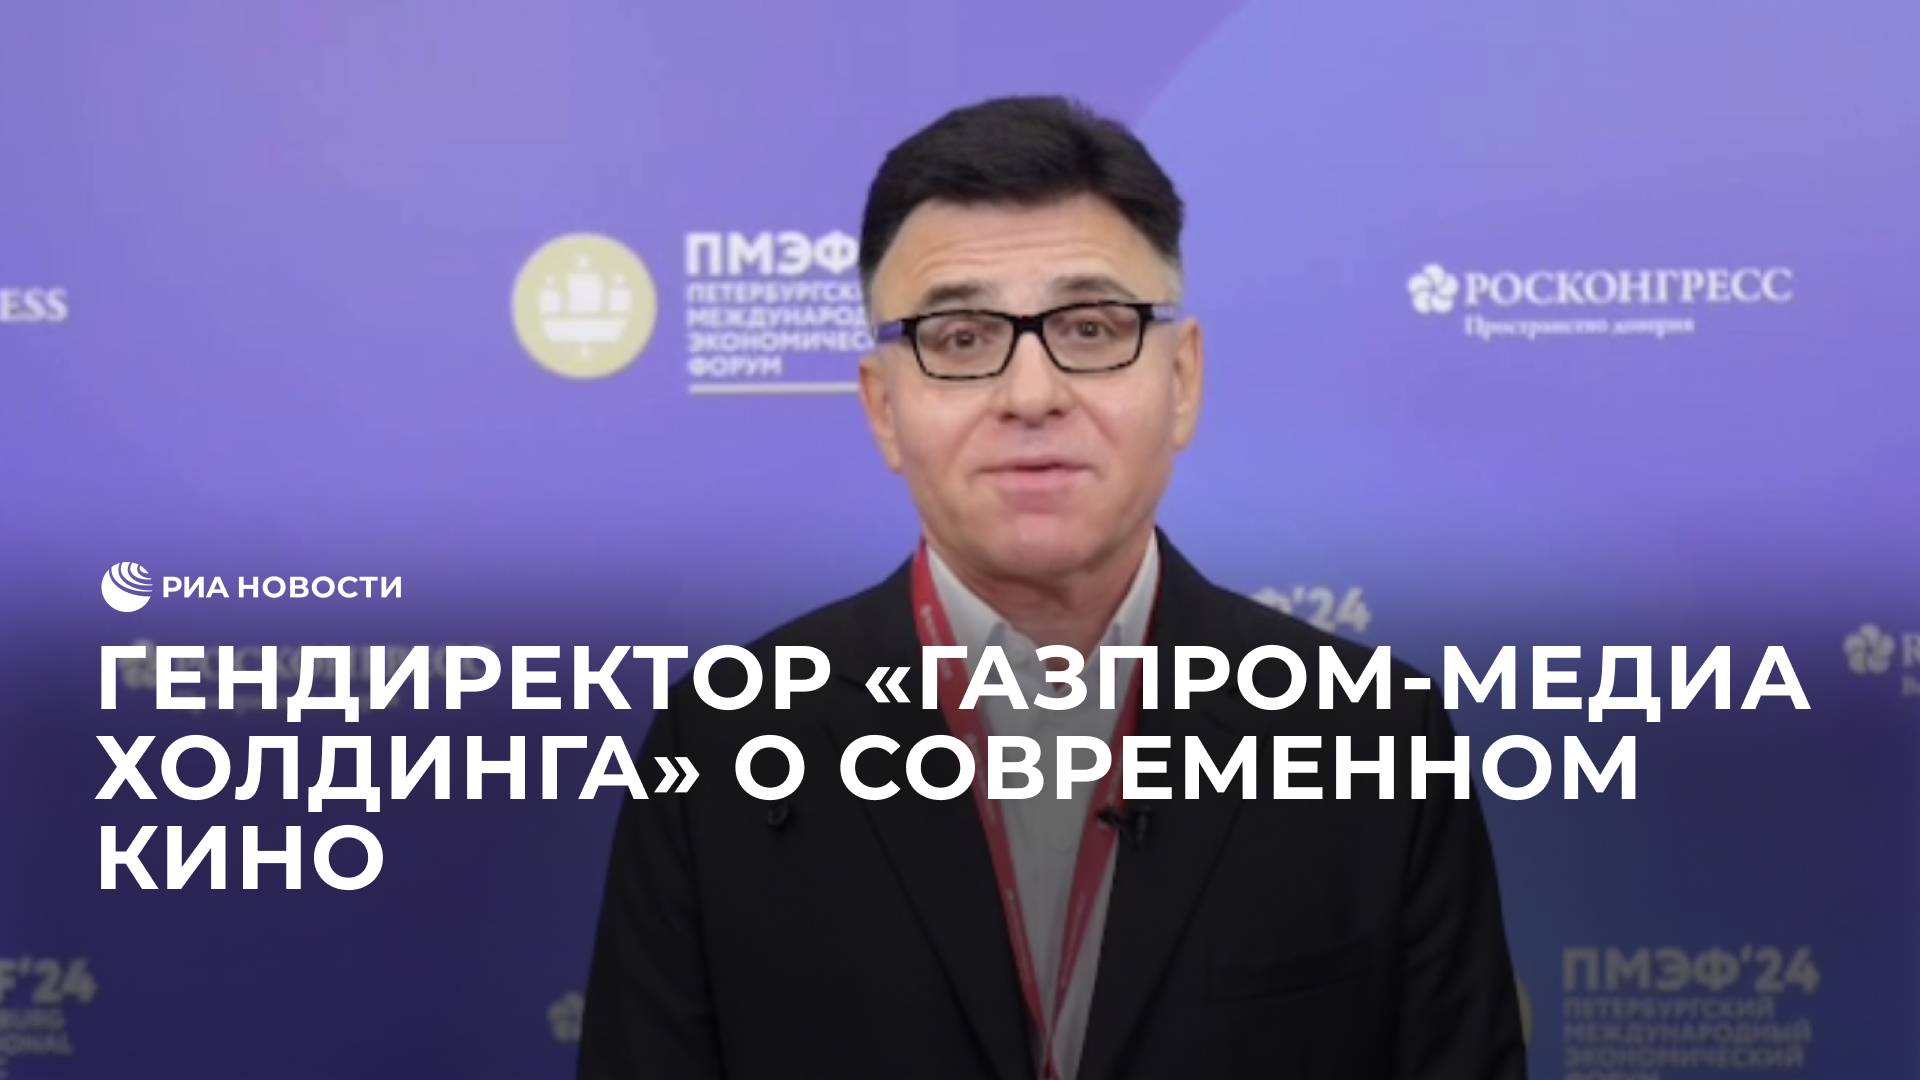 Гендиректор “Газпром-Медиа Холдинга” о современном кино